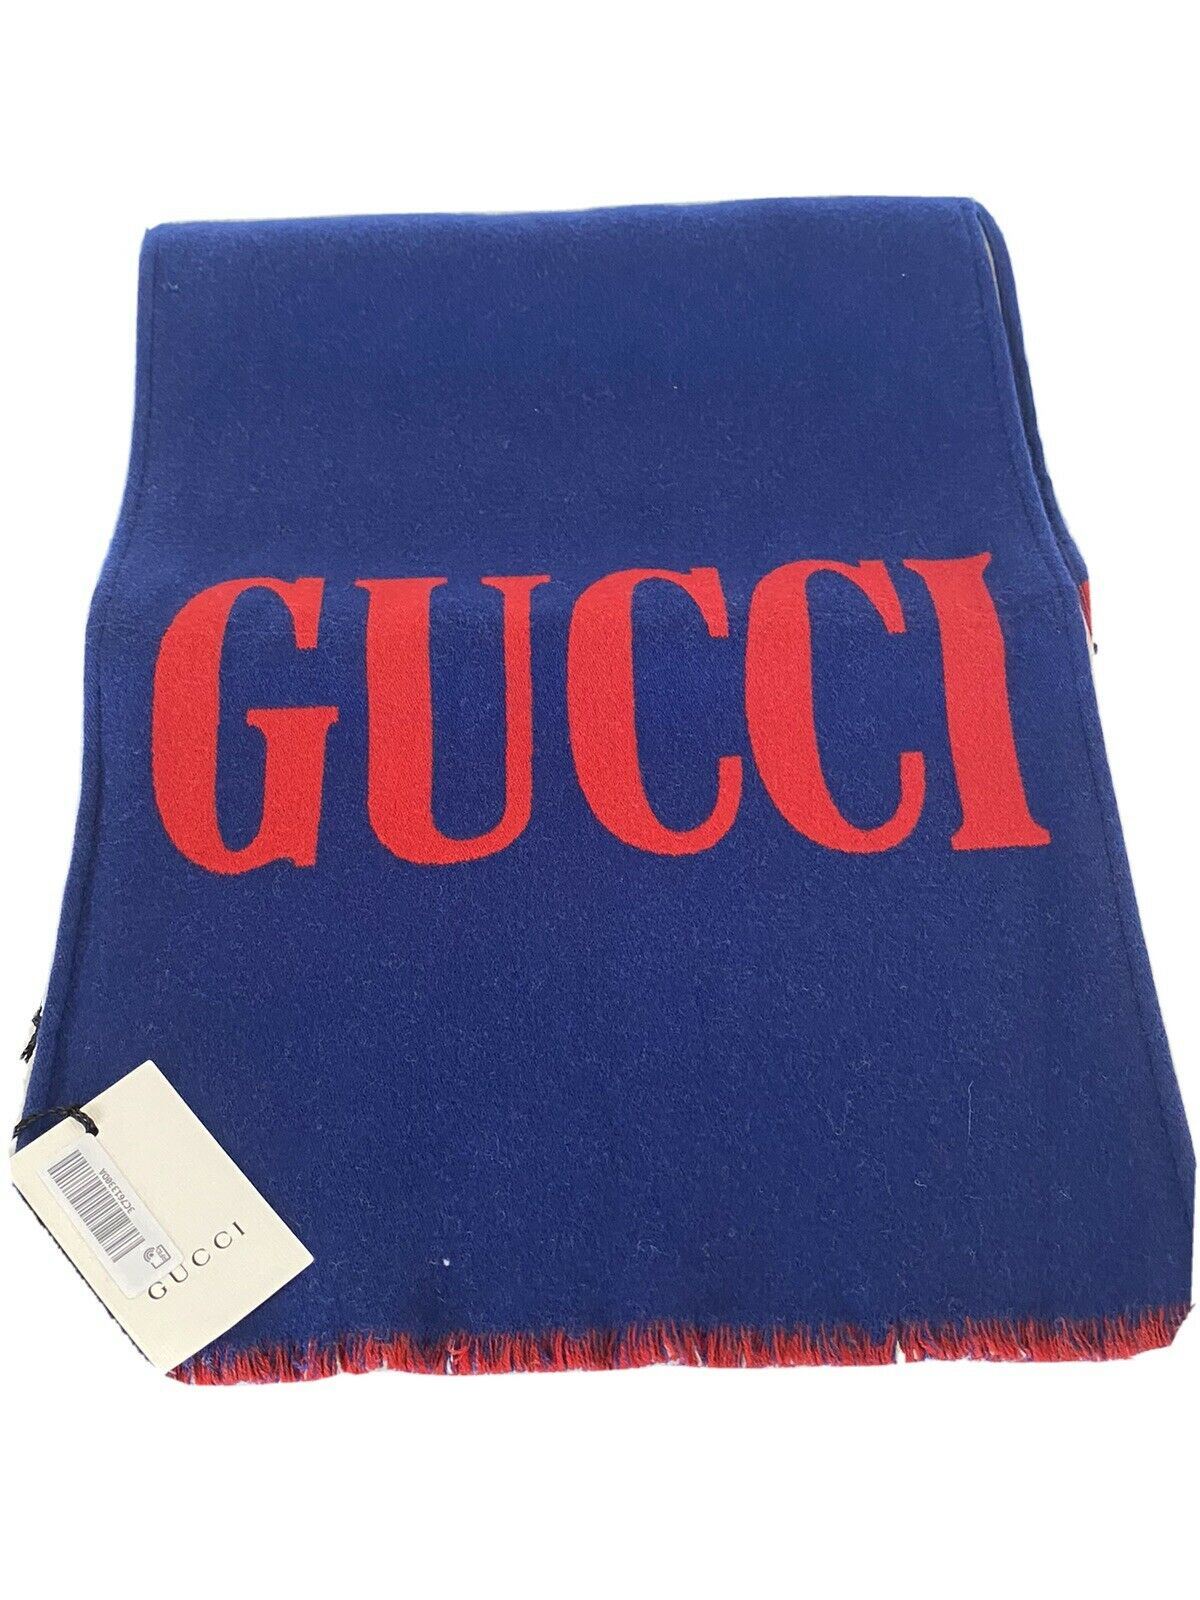 Neu mit Etikett: Gucci Guccium Blauer Woll-/Seidenschal 525559 35x180 Hergestellt in Italien 